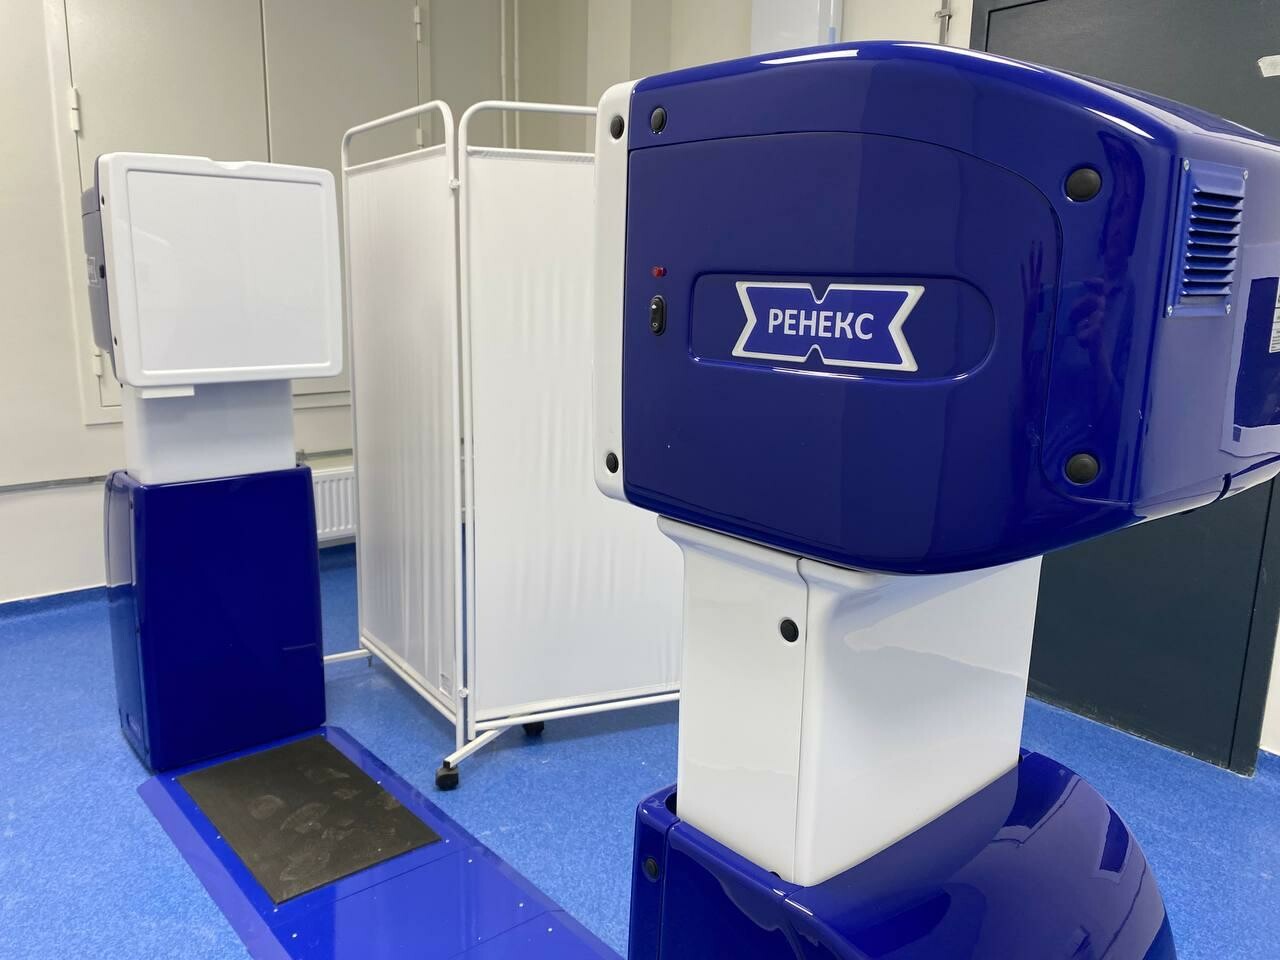 Новая поликлиника в Подлипках уже практически на 100% укомплектована новым современным оборудованием